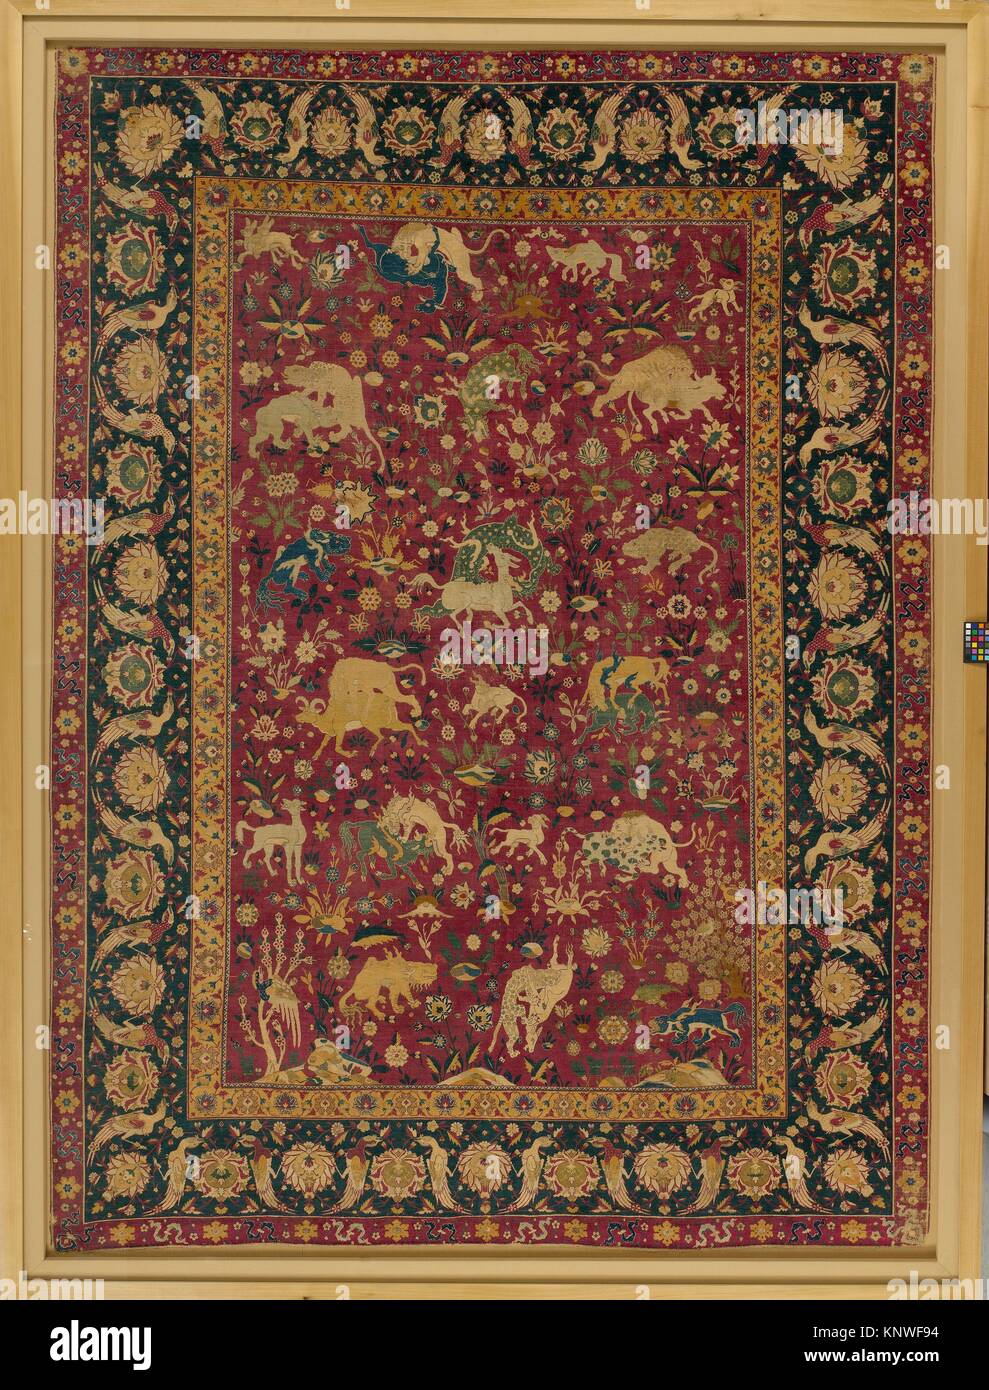 Animal en soie tapis. Nom de l'objet : tapis ; Date : seconde moitié 16e siècle ; Géographie : en Iran, Kashan probablement ; moyen : la soie (chaîne, la trame, et Banque D'Images